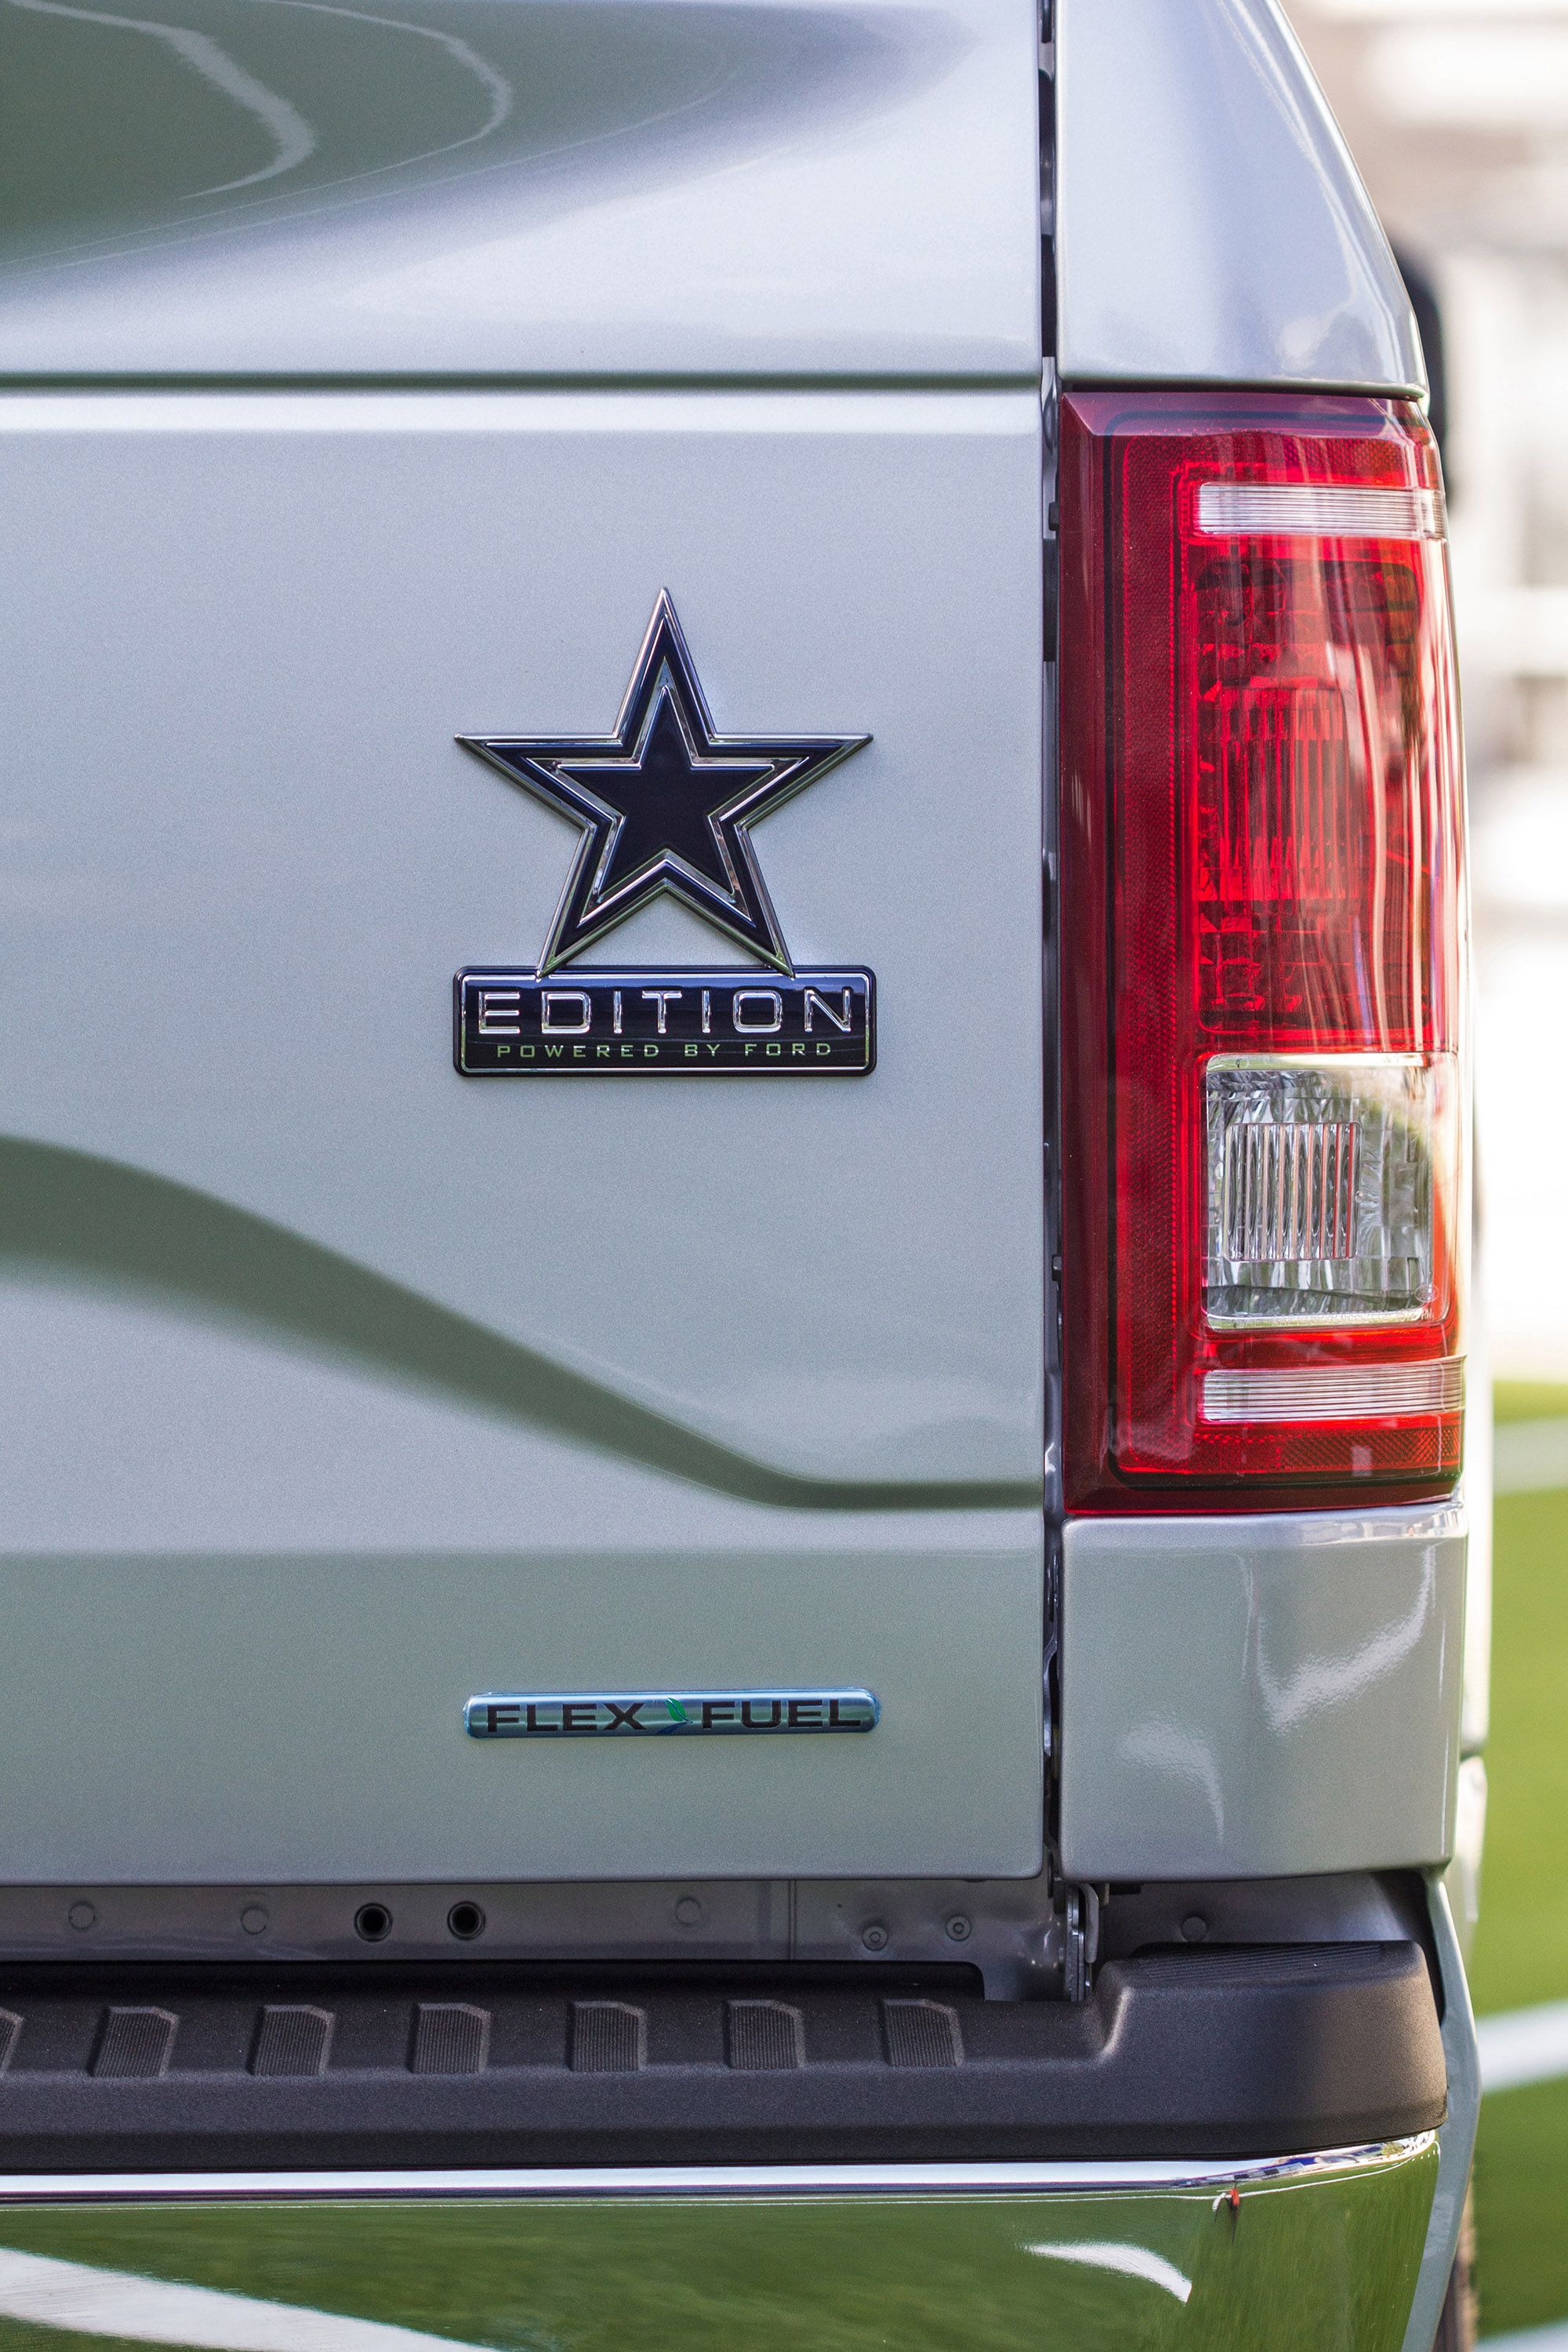 2017 Ford F-150 Dallas Cowboys Edition 